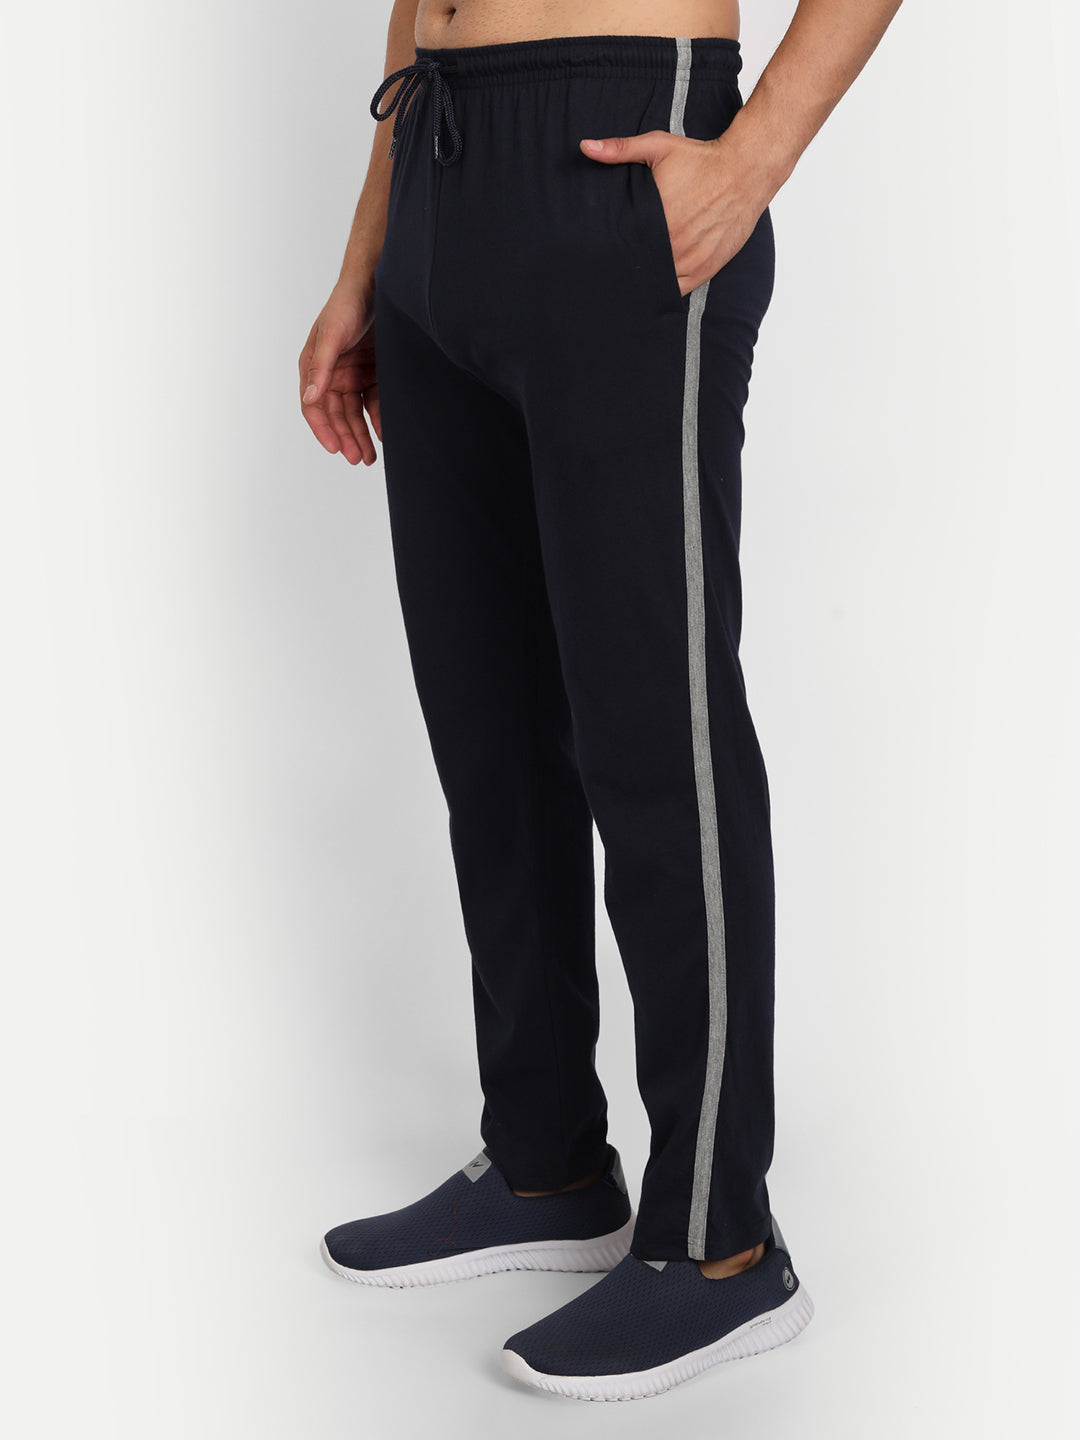 4 Colors Men's Fashion Elastic Waist Casual Pants Linen Cotton Long Trousers  Solid Color Men Loose Pants | Wish